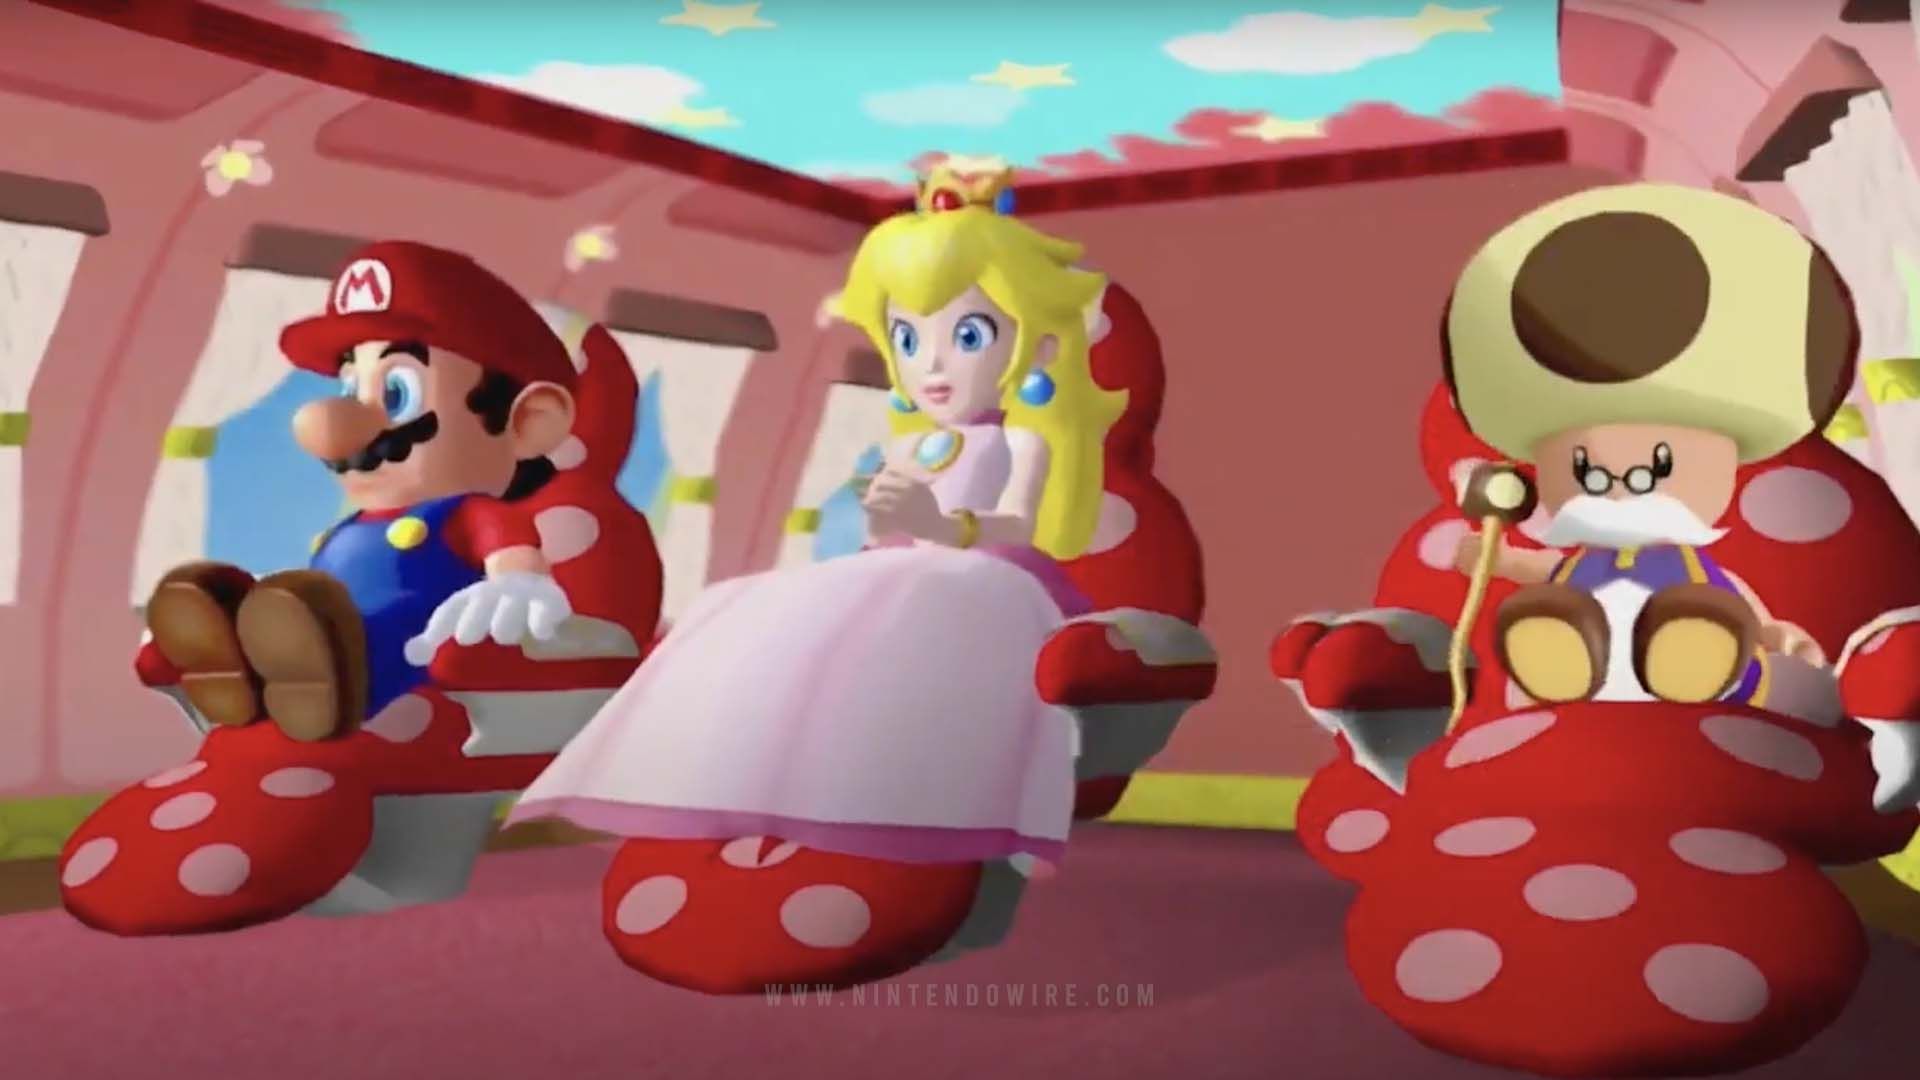 Check out Super Mario Sunshine's opening cutscene in Super Mario 3D All- Stars